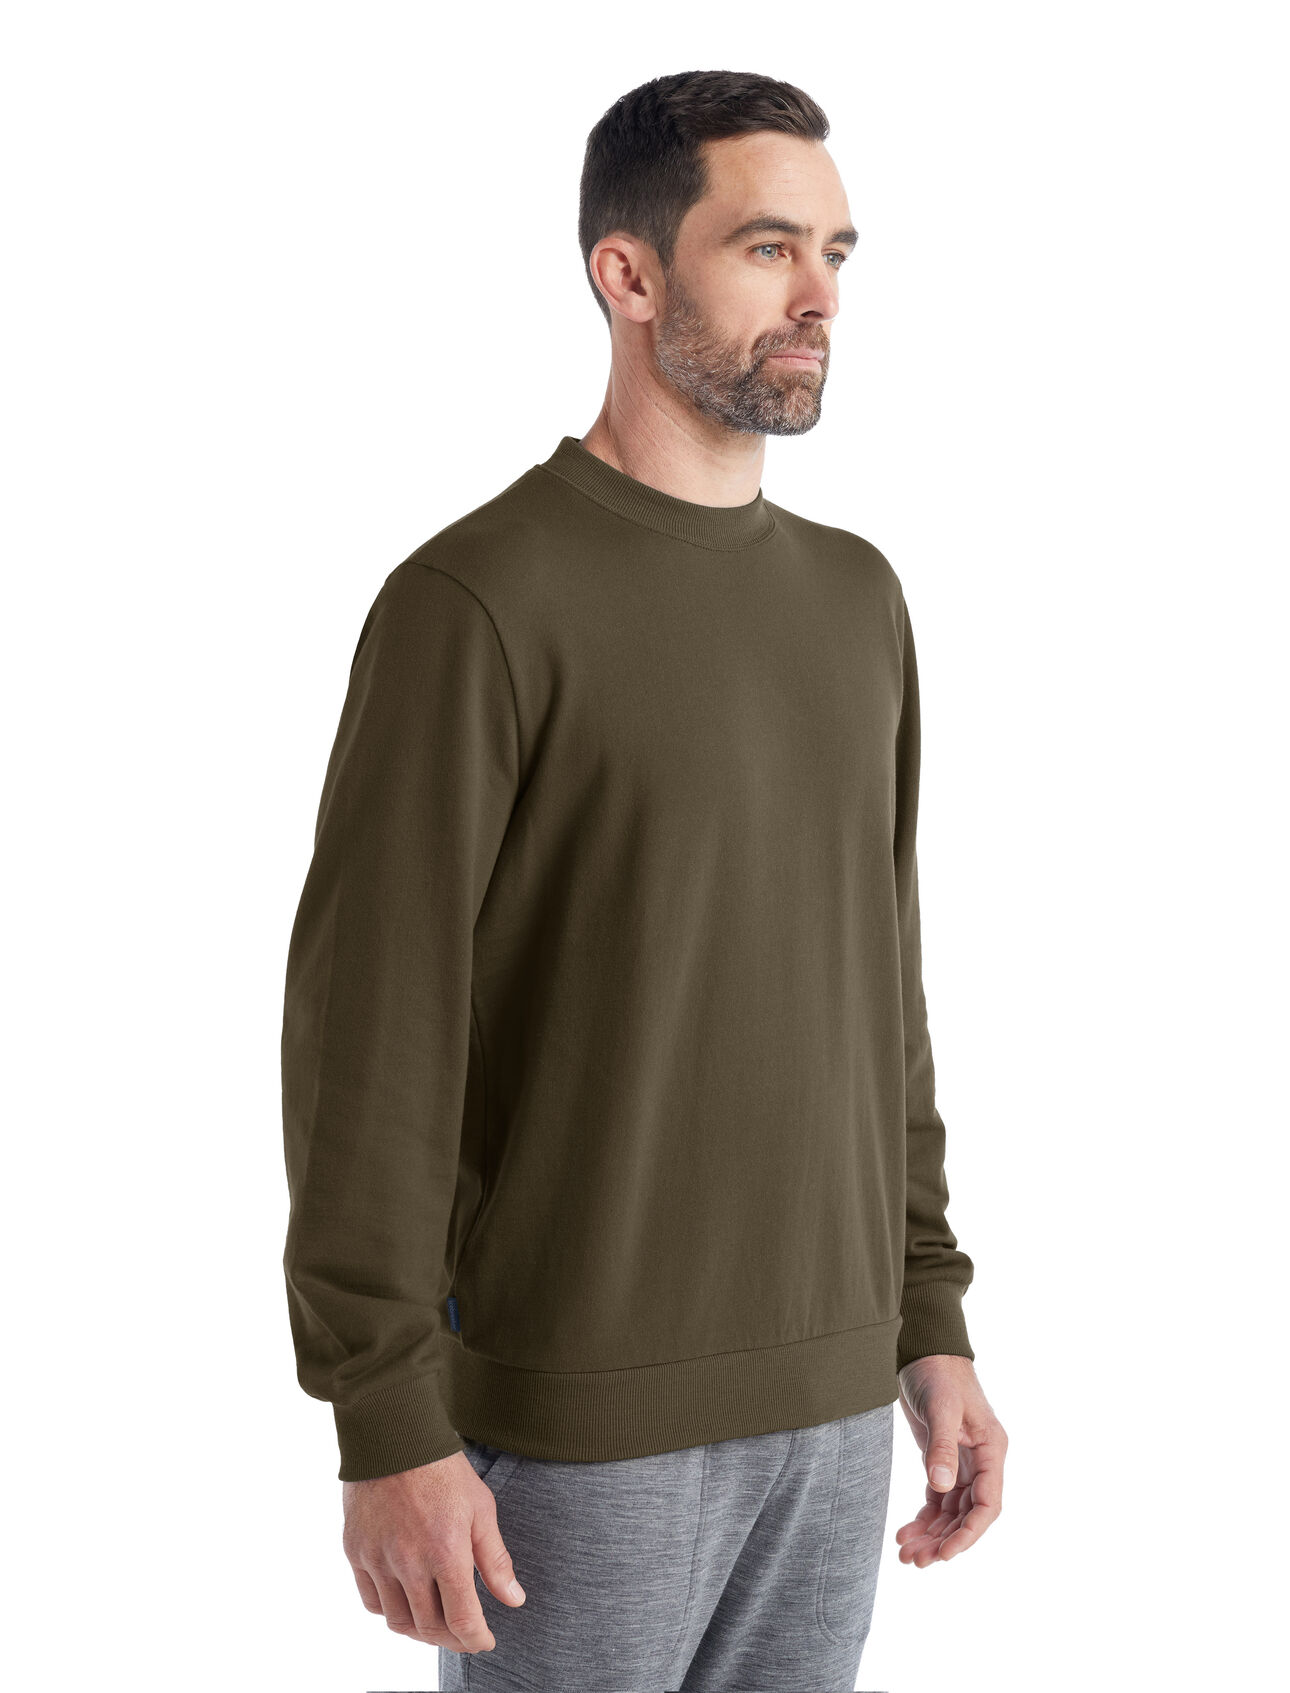 Merino Shifter Sweatshirt Herren Ein klassisches und stylishes Sweatshirt aus 100% Merinowolle in French Terry, das Shifter Sweatshirt ist ein weicher, komfortabler und vielseitig einsetzbarer Layer.